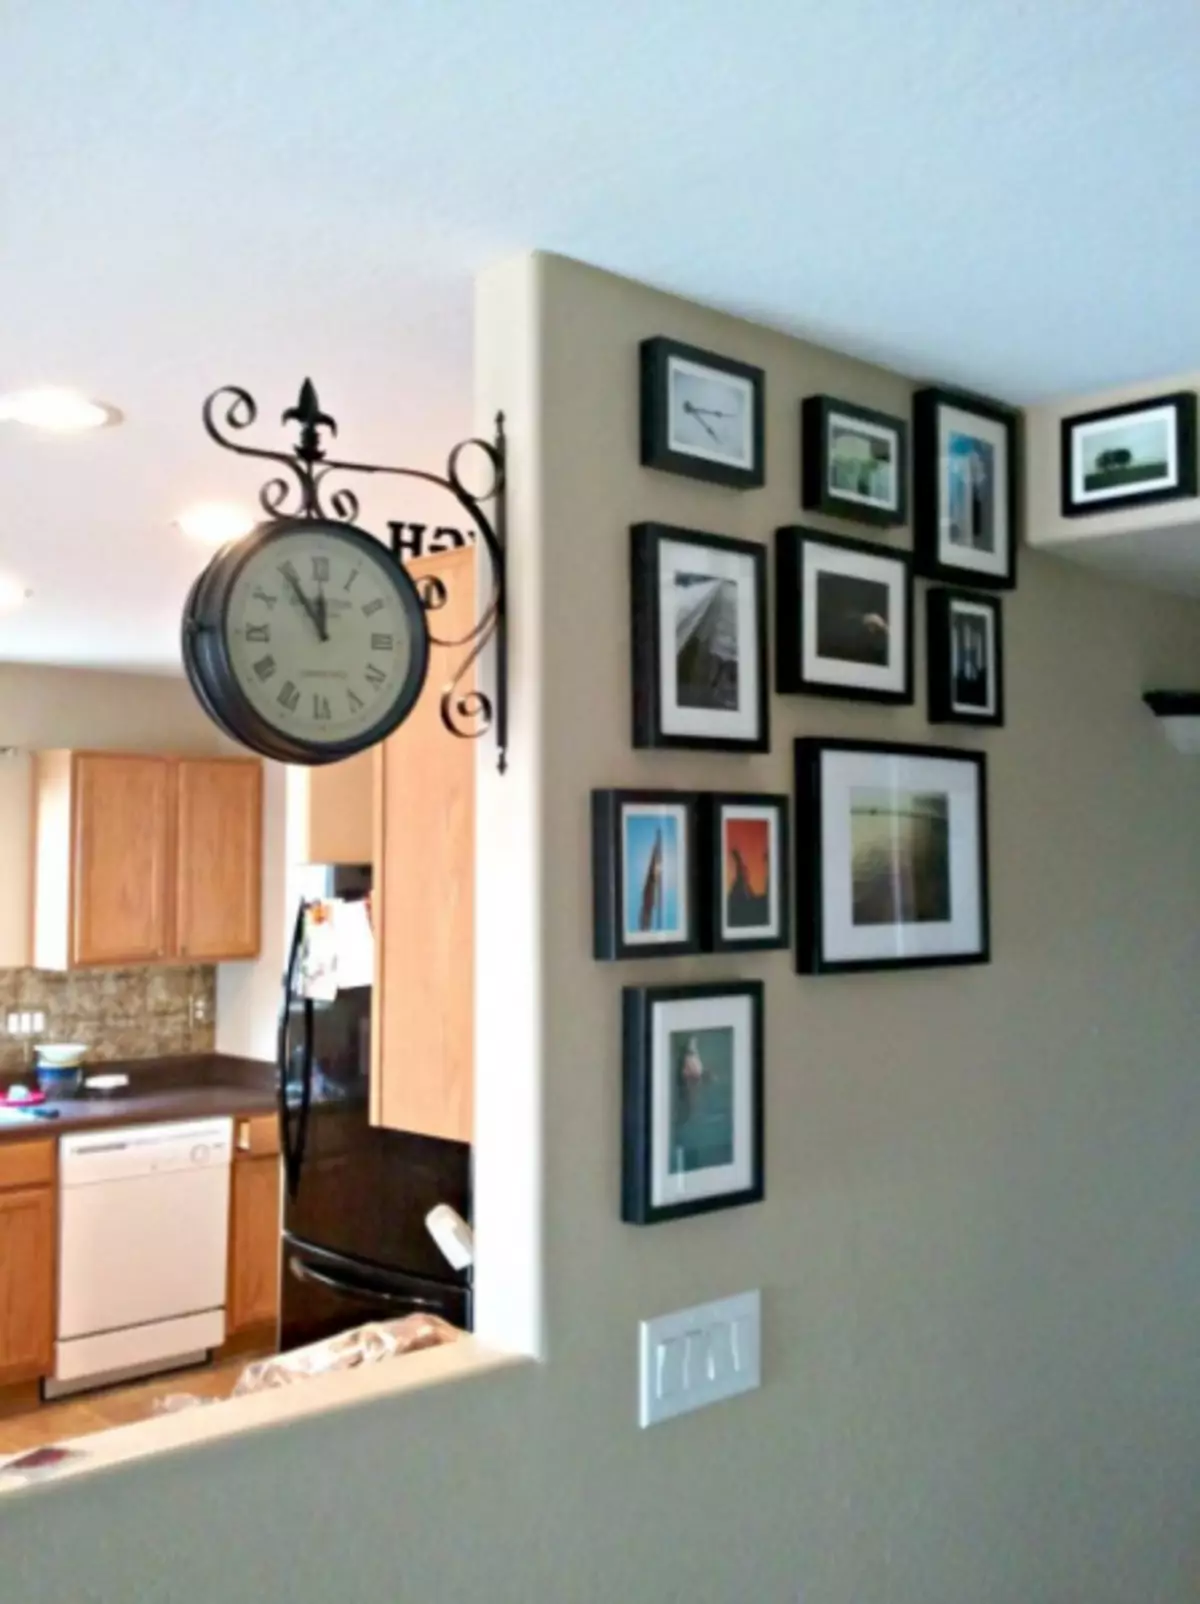 კედლის საათი მისაღები ოთახი - 80 ფოტო ორიგინალური დიზაინის იდეები